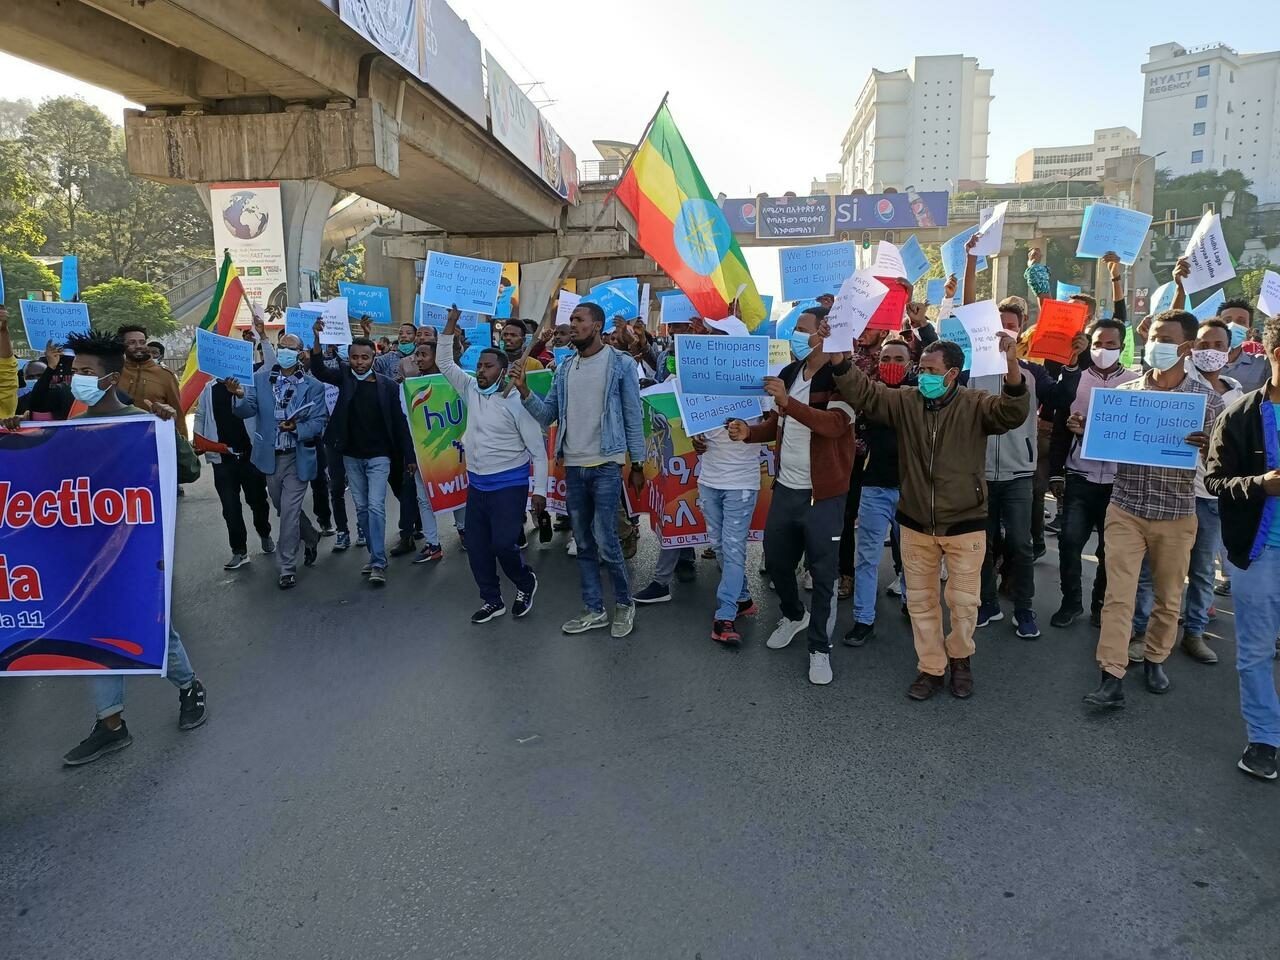 Éthiopie Expulse Fonctionnaires Onu Les États Unis Sanctions